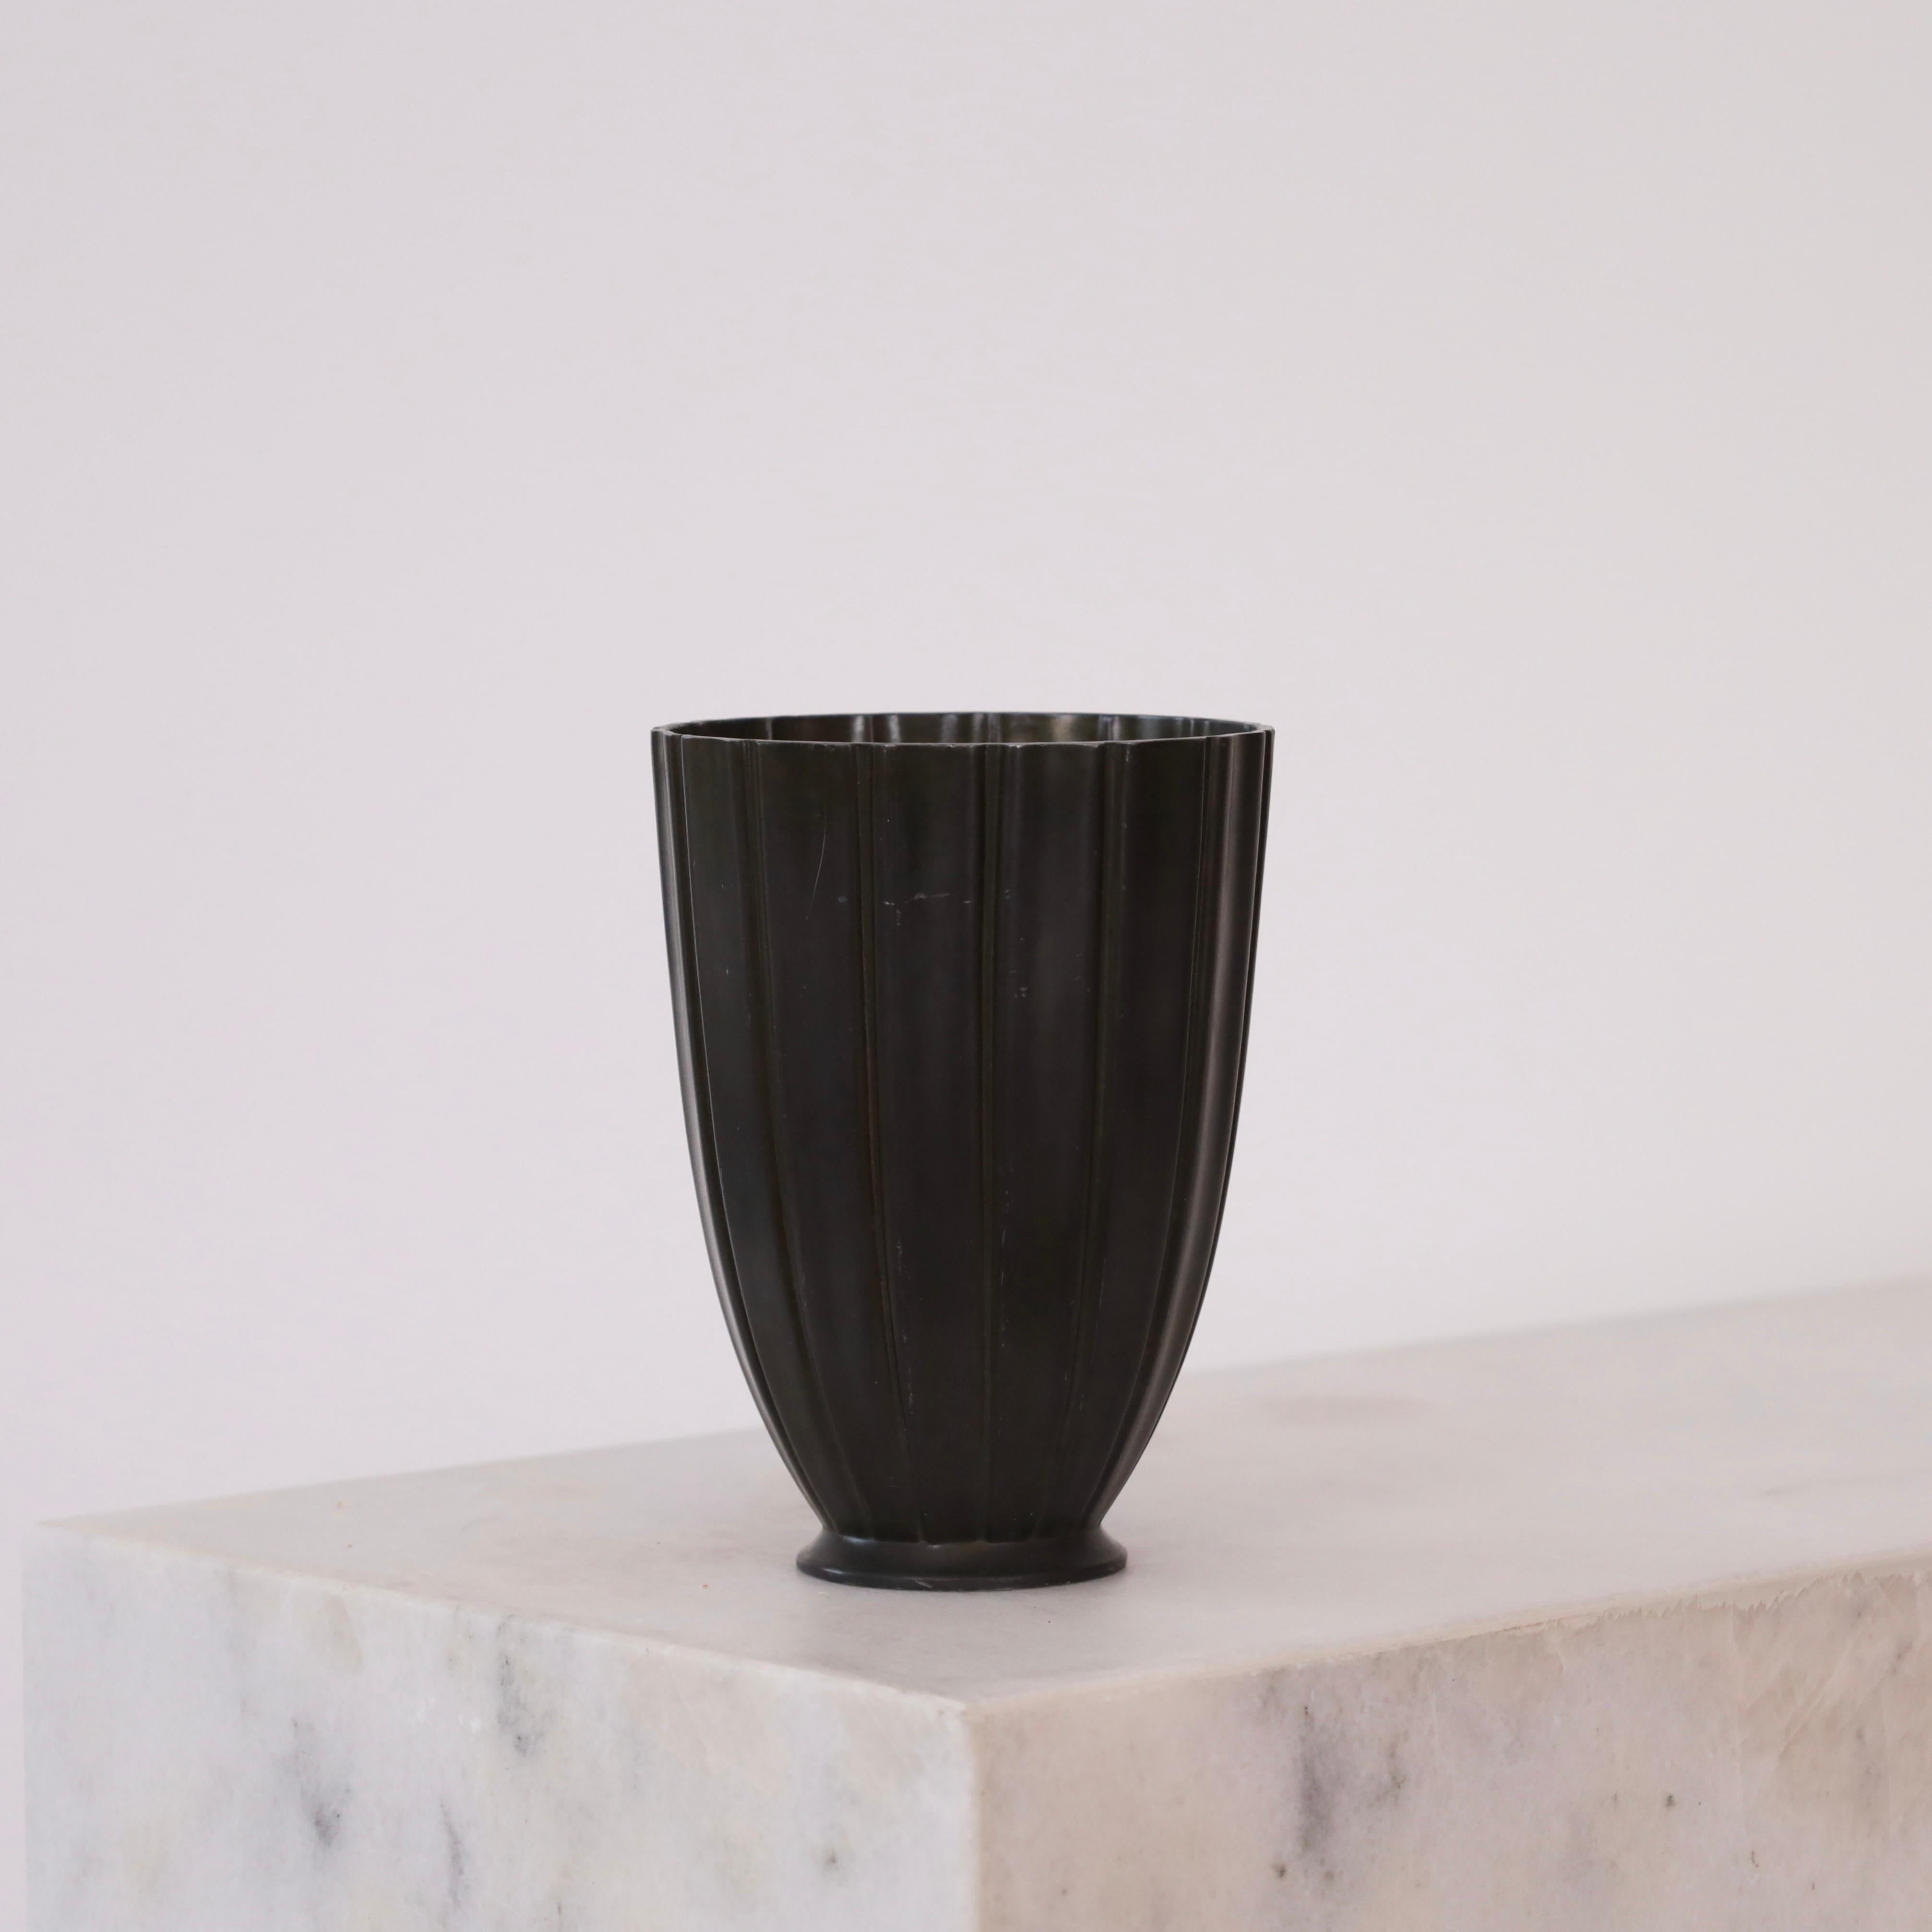 Un vase en métal aux lignes verticales conçu par Just Andersen dans les années 1942. Une belle pièce pour un endroit magnifique.

* Un vase en métal avec des lignes verticales sur un petit pied
* Designer : Just Andersen
* Modèle : D2363 (estampillé